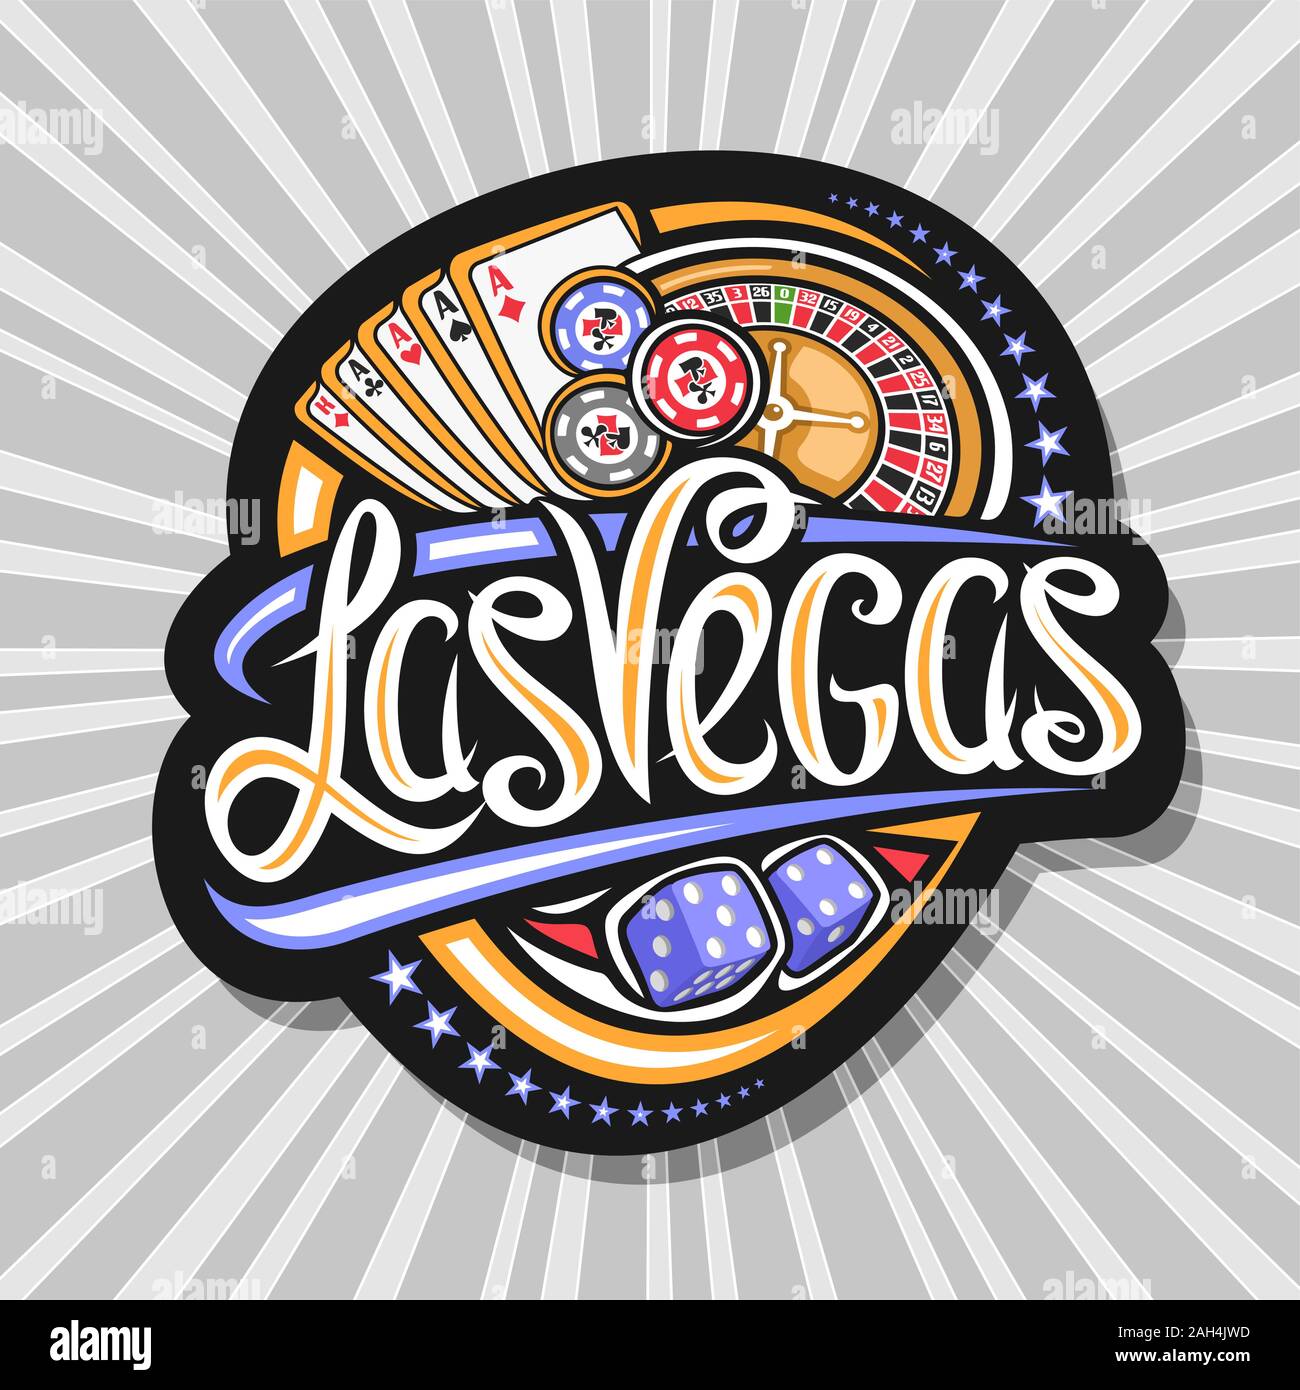 Vektor logo für Las Vegas, dunklen dekorative Tag mit der Abbildung von vier Art Asse und Roulette, Schild mit original Schriftzug für Wörter Las Vega Stock Vektor